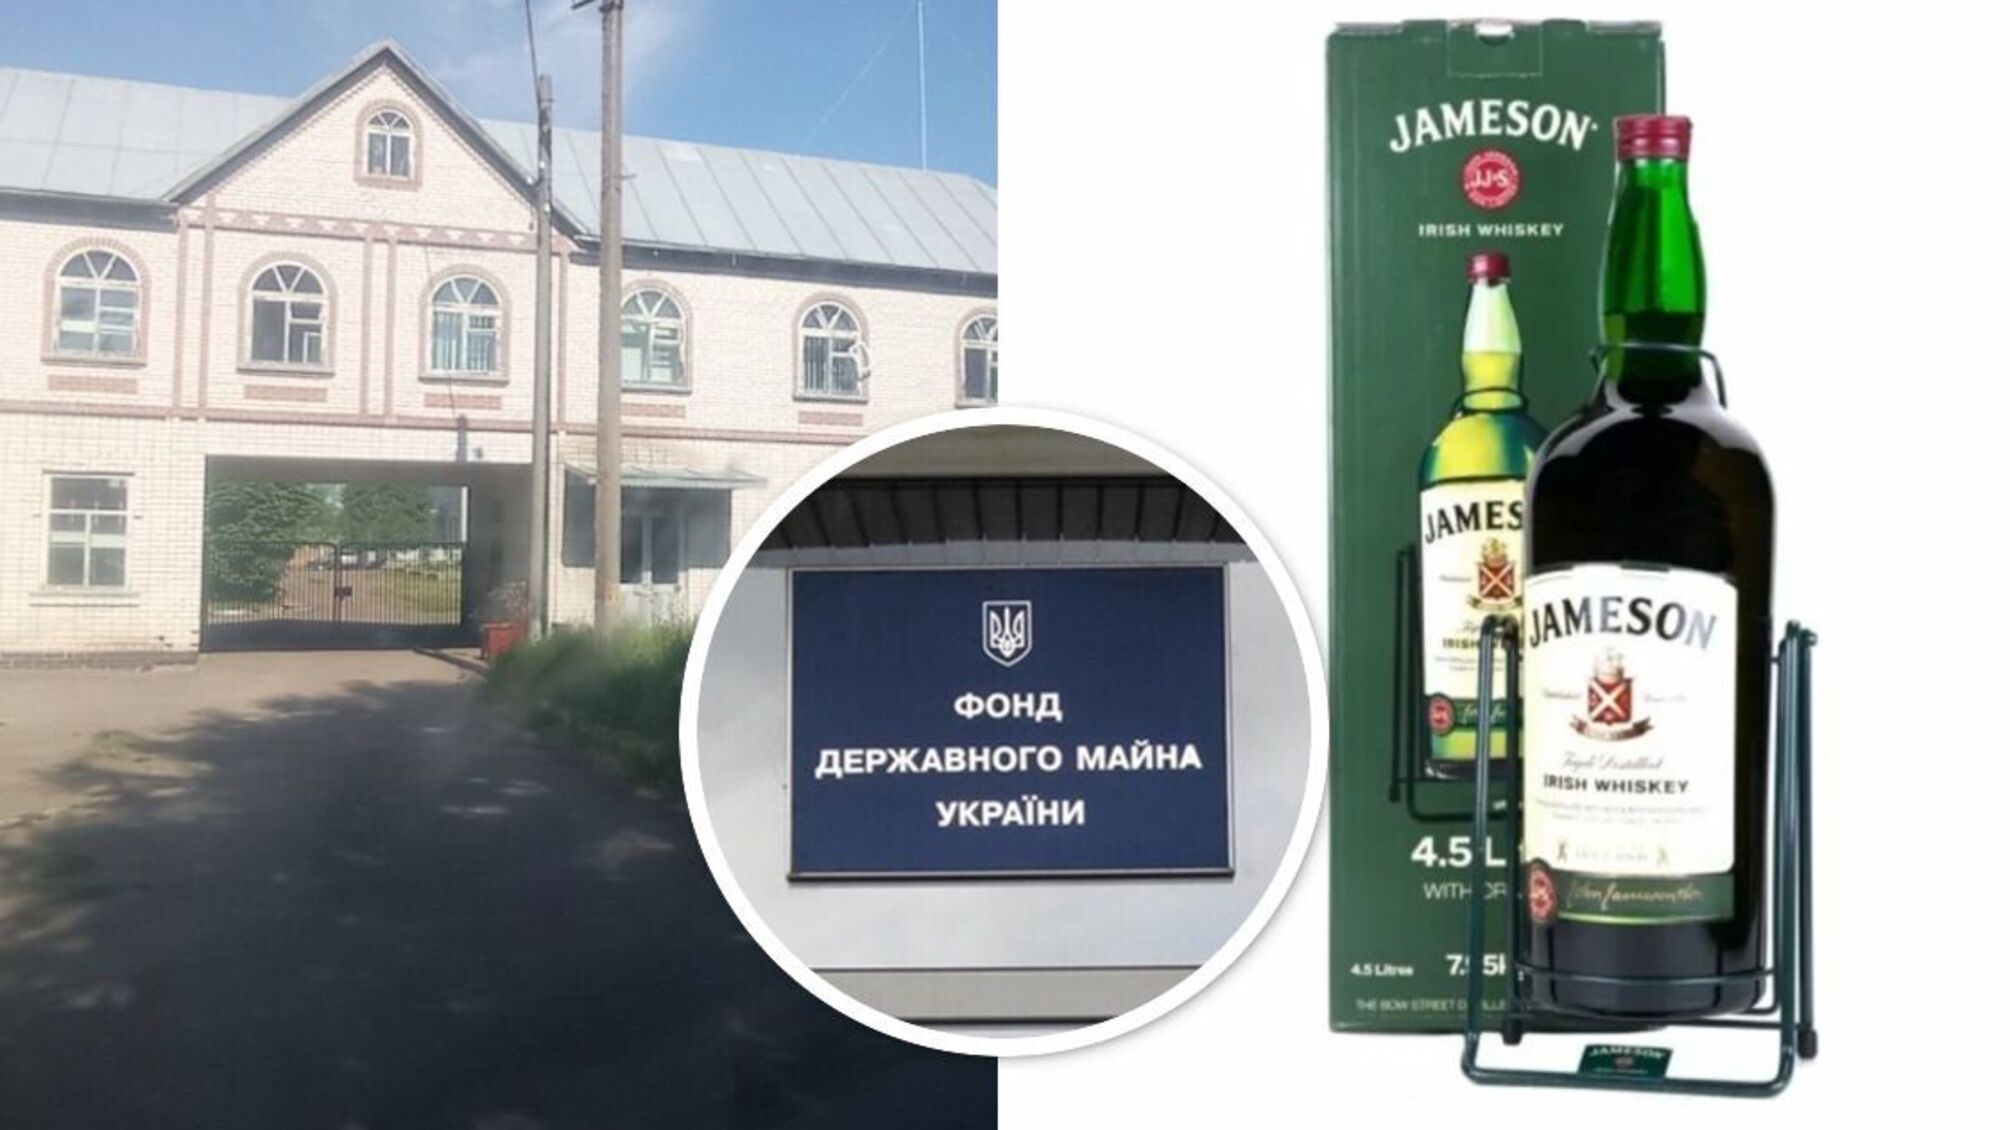 Спиртзавод по цене бутылки виски: на Киевщине предприятие пустили с молотка за 176 долларов